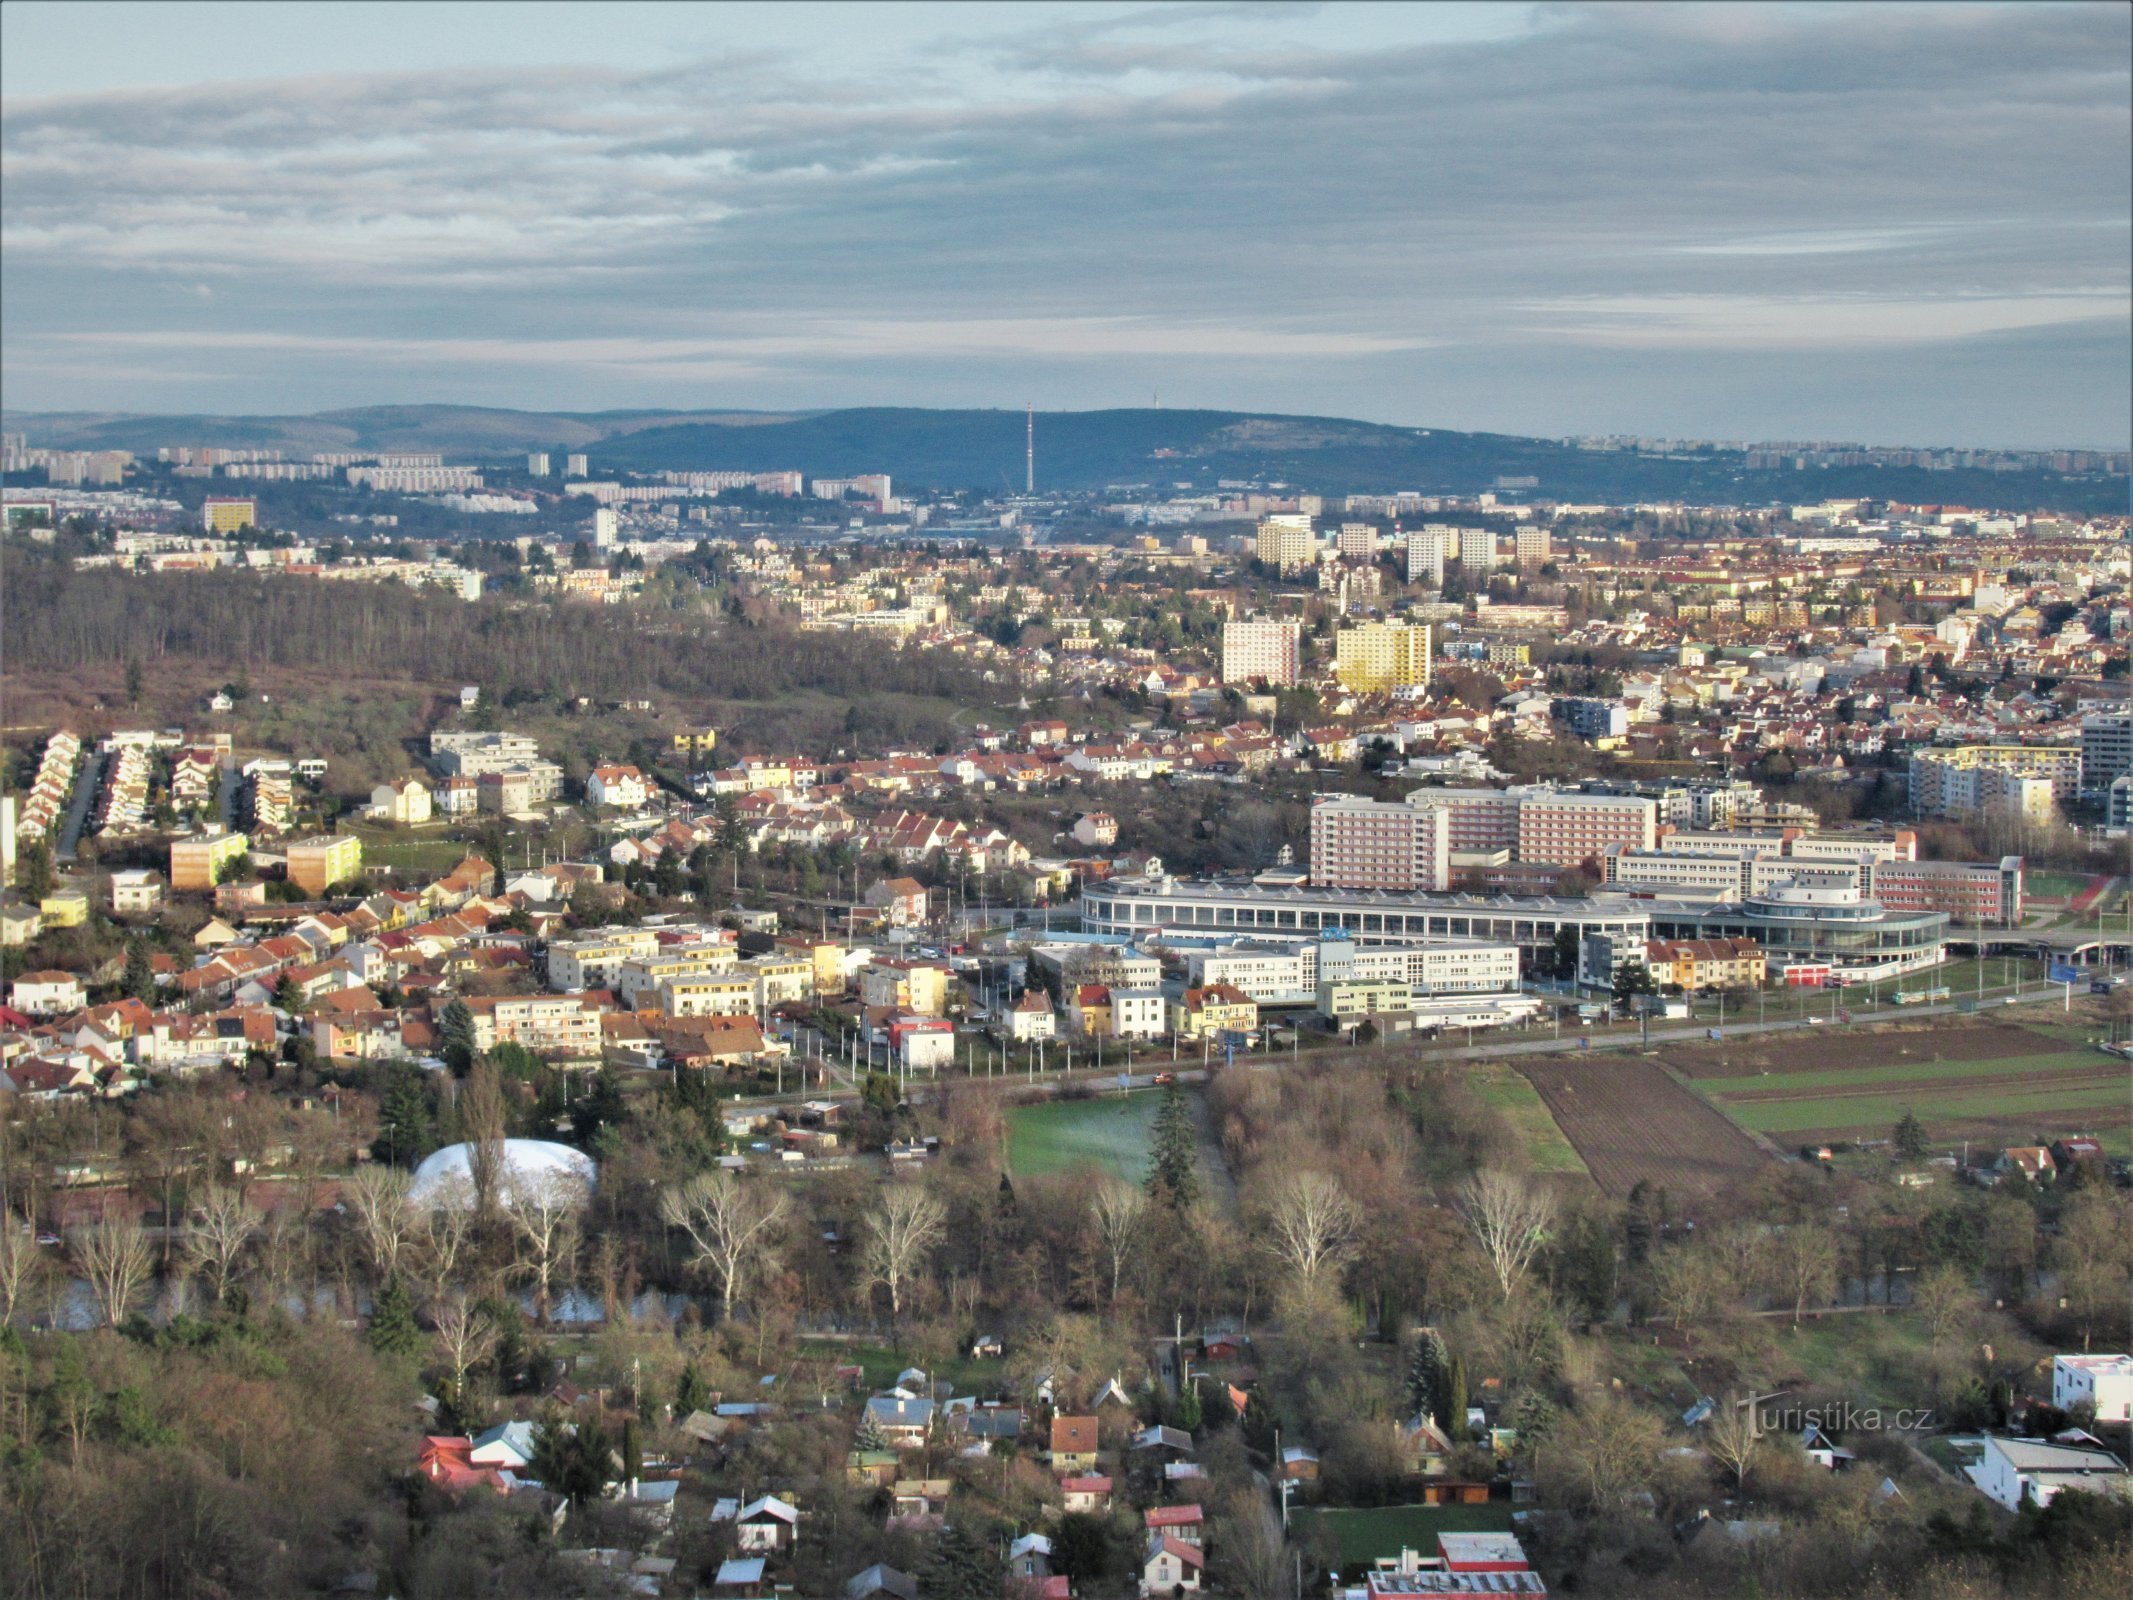 Uitzicht vanaf de uitkijktoren naar het centrale deel van de stad